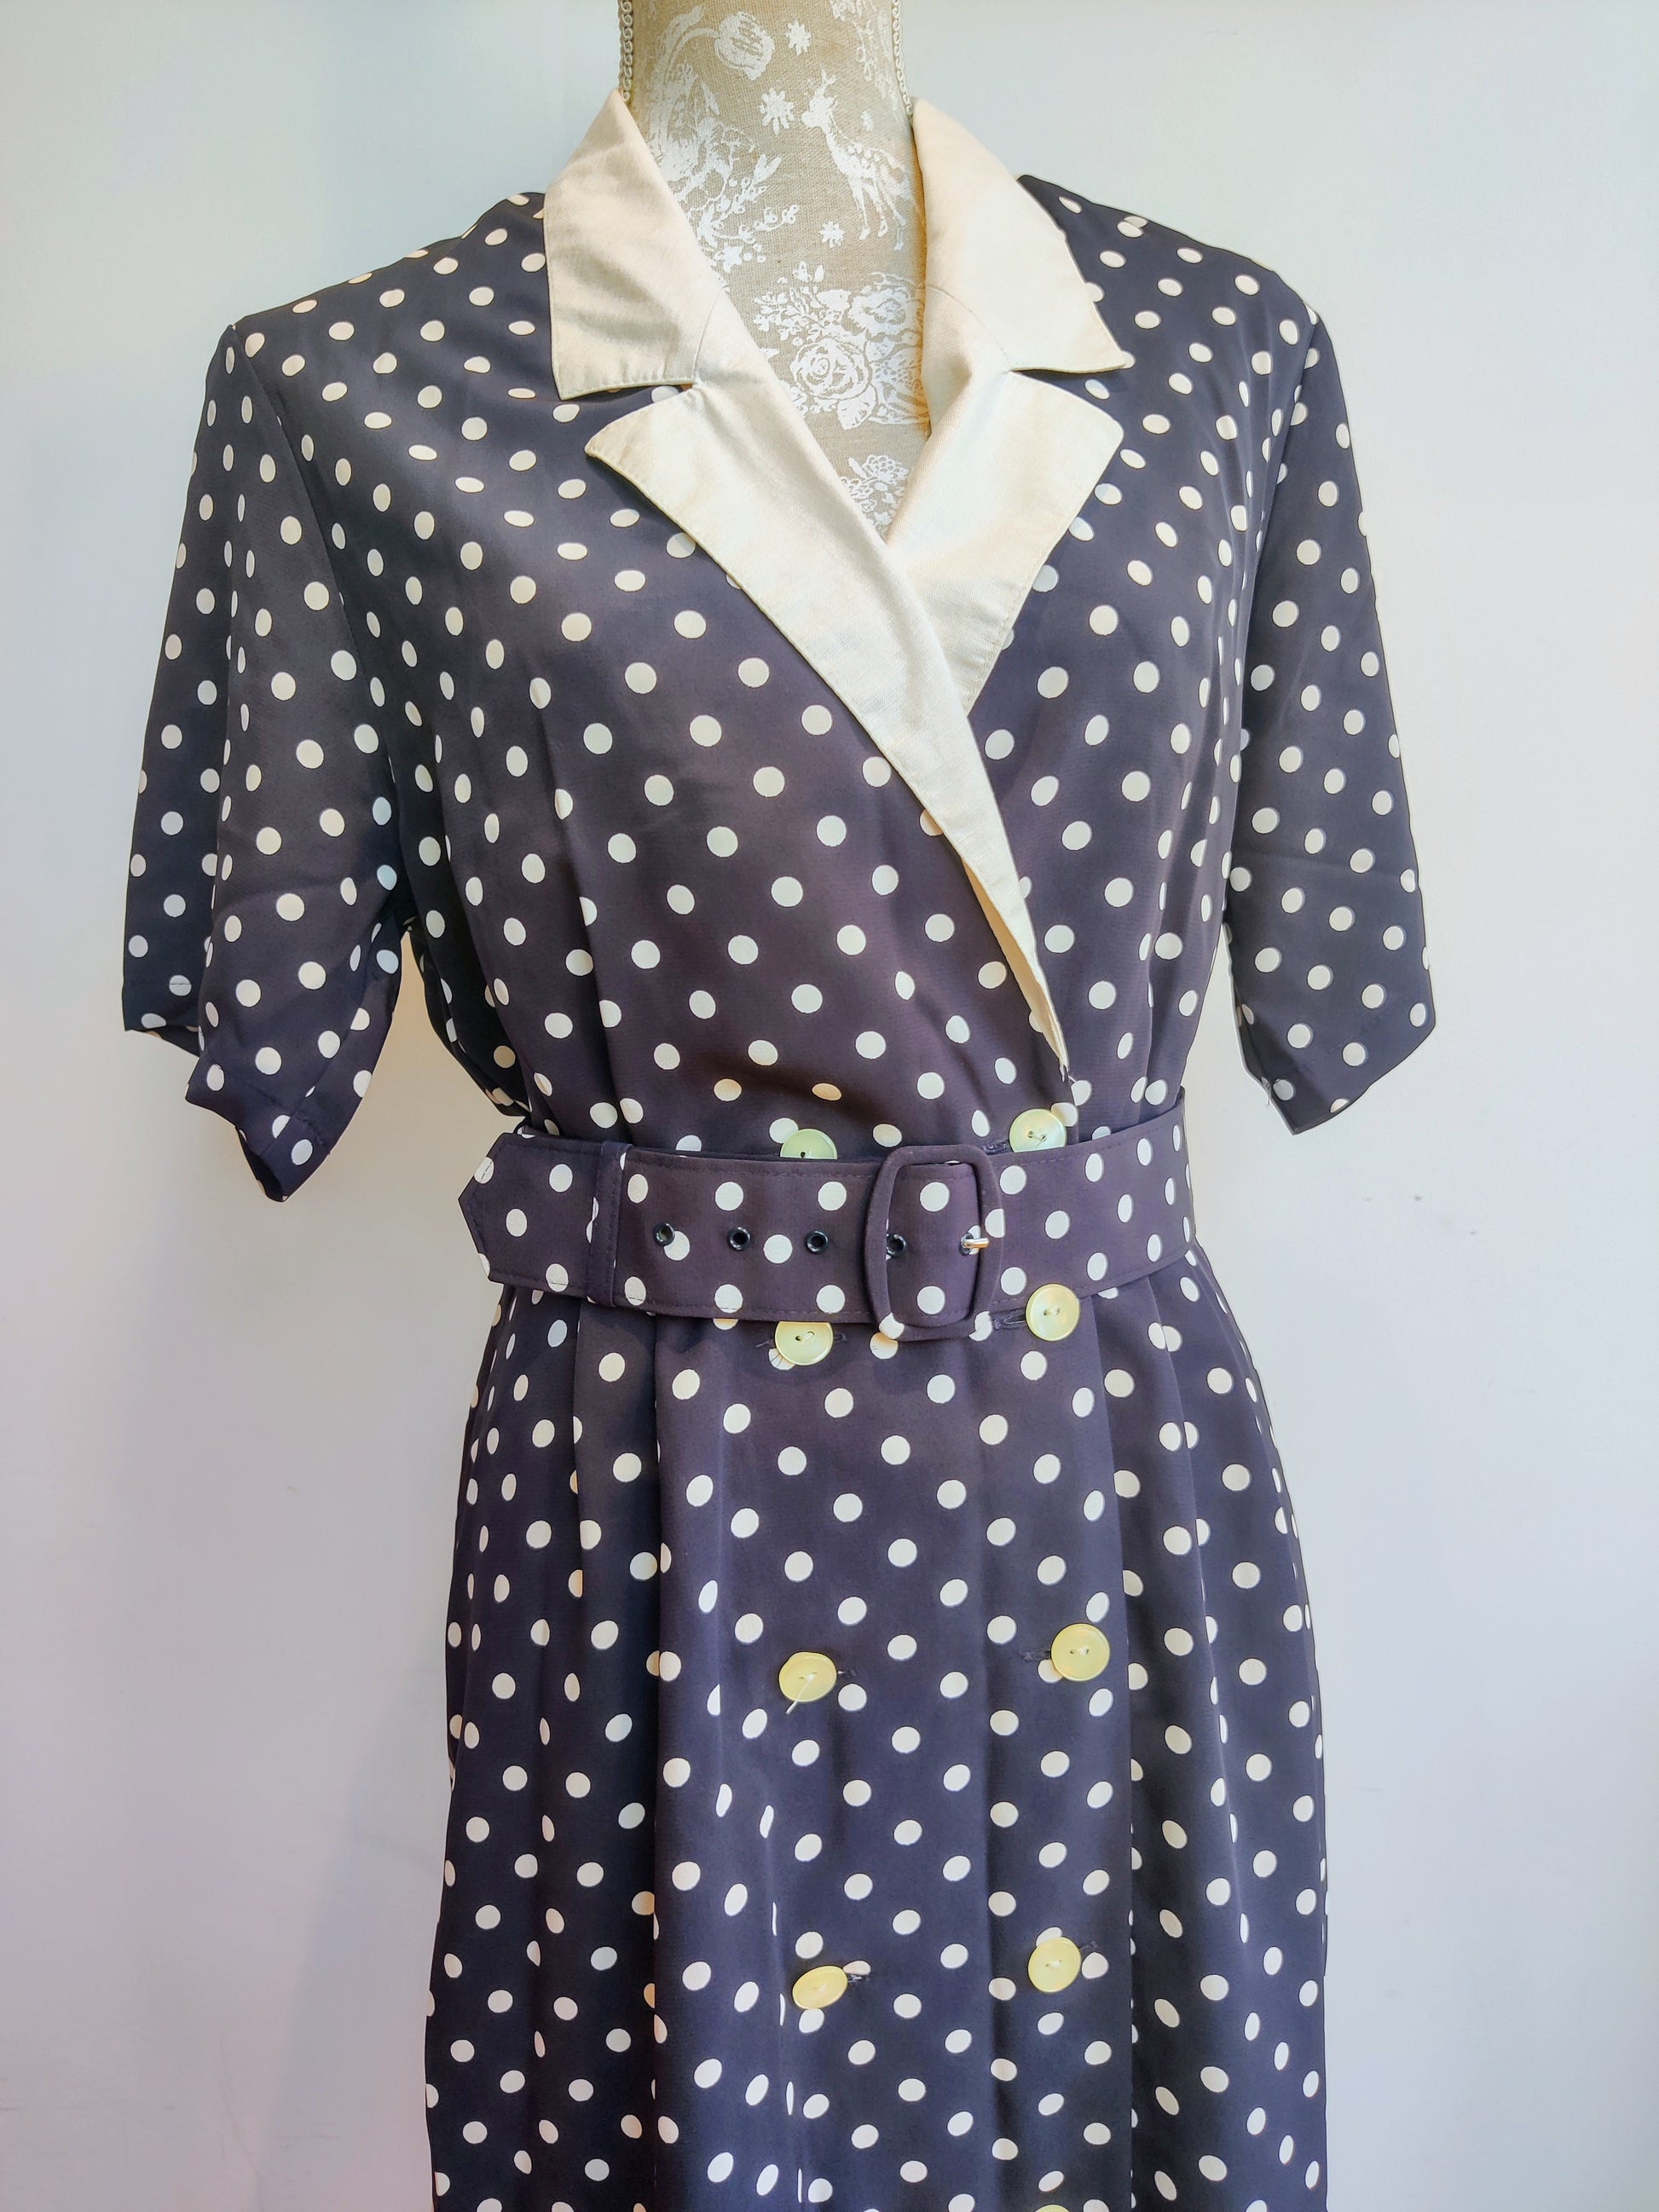 short sleeved vintage polka dot dress with belt